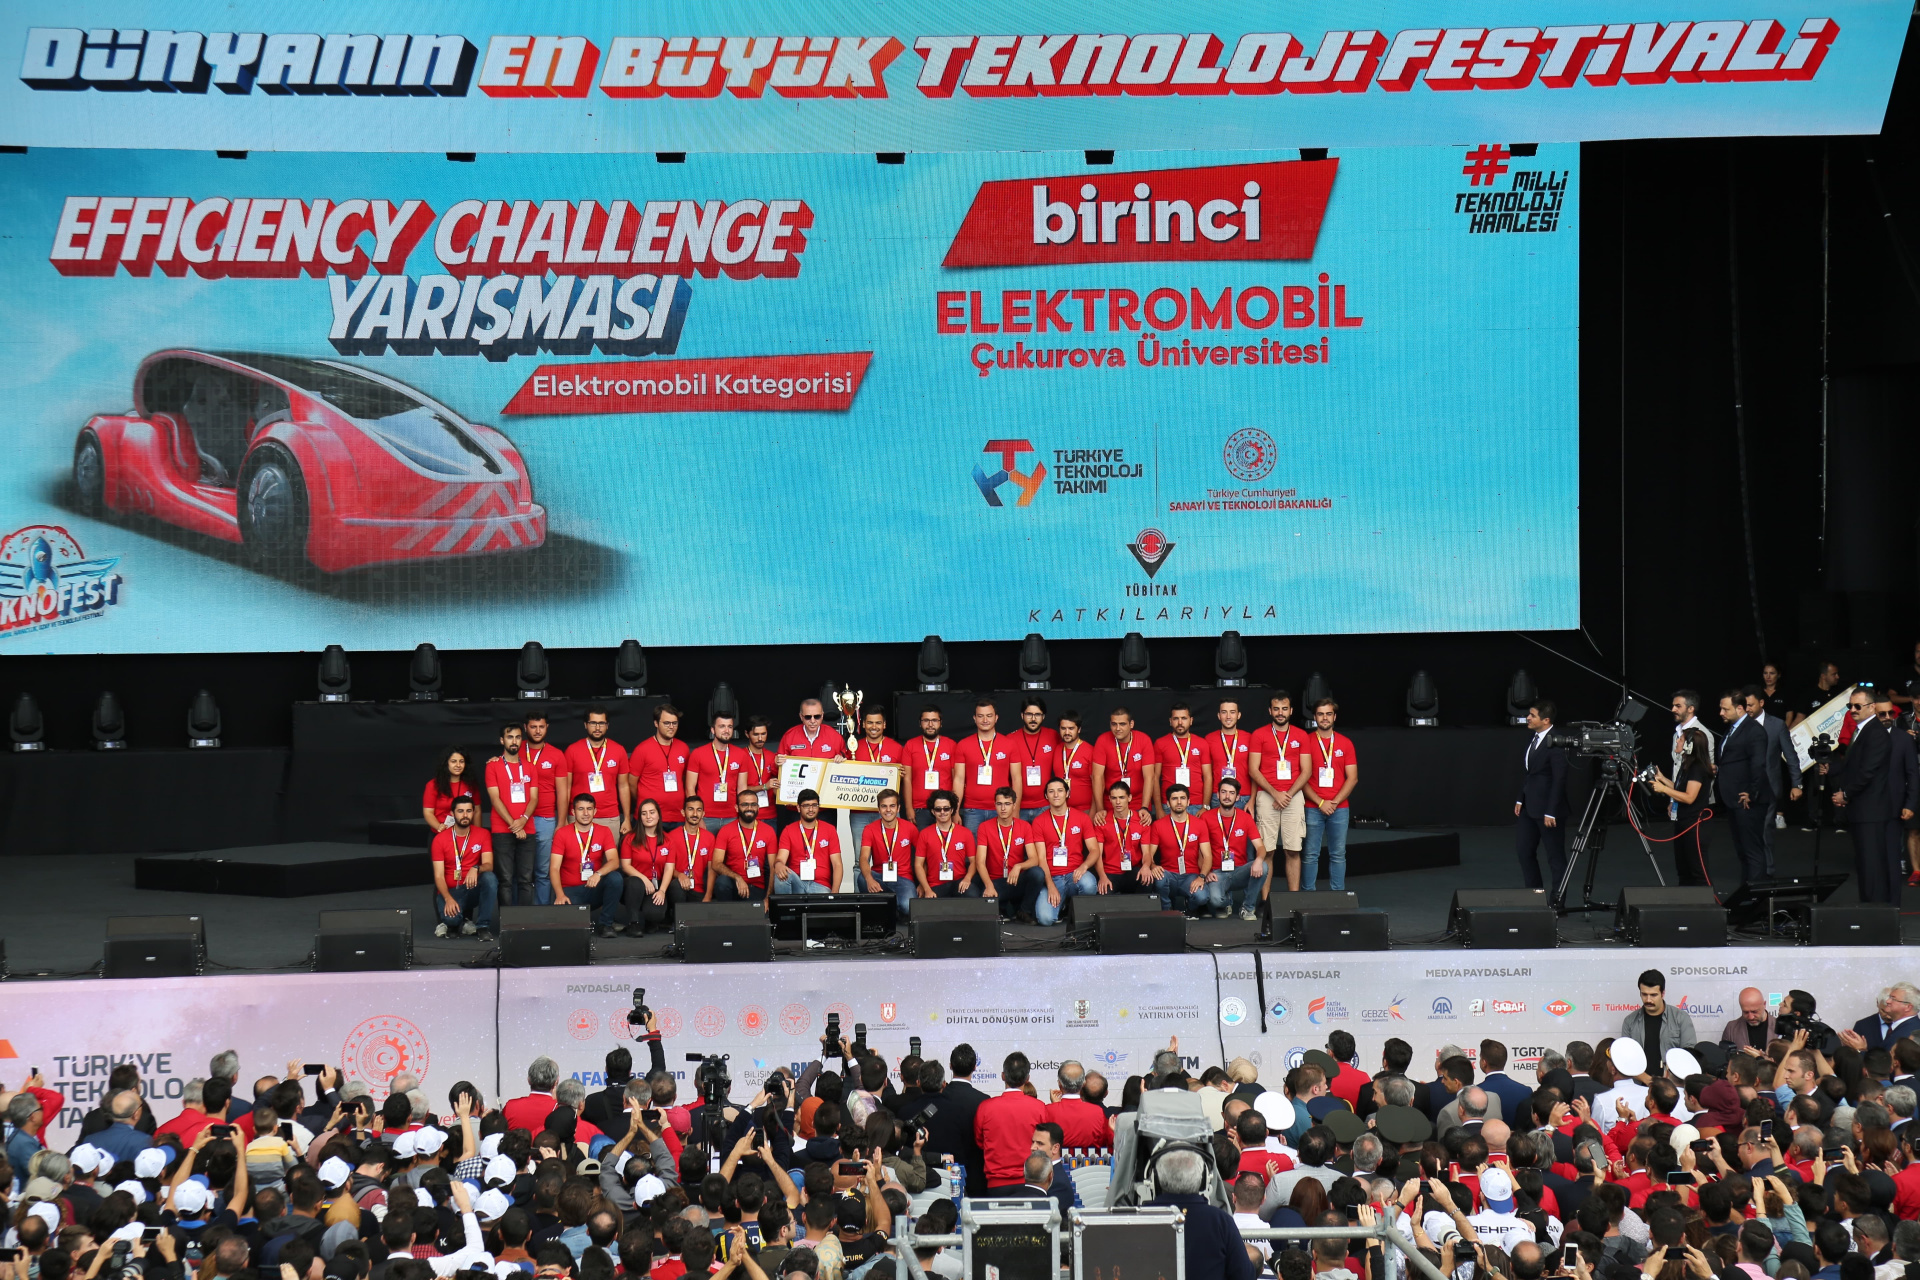 TEKNOFEST 2019 Uluslararası Efficiency Challenge Elektrikli Araç Yarışları'nda ŞAMPİYON 1.5 ADANA